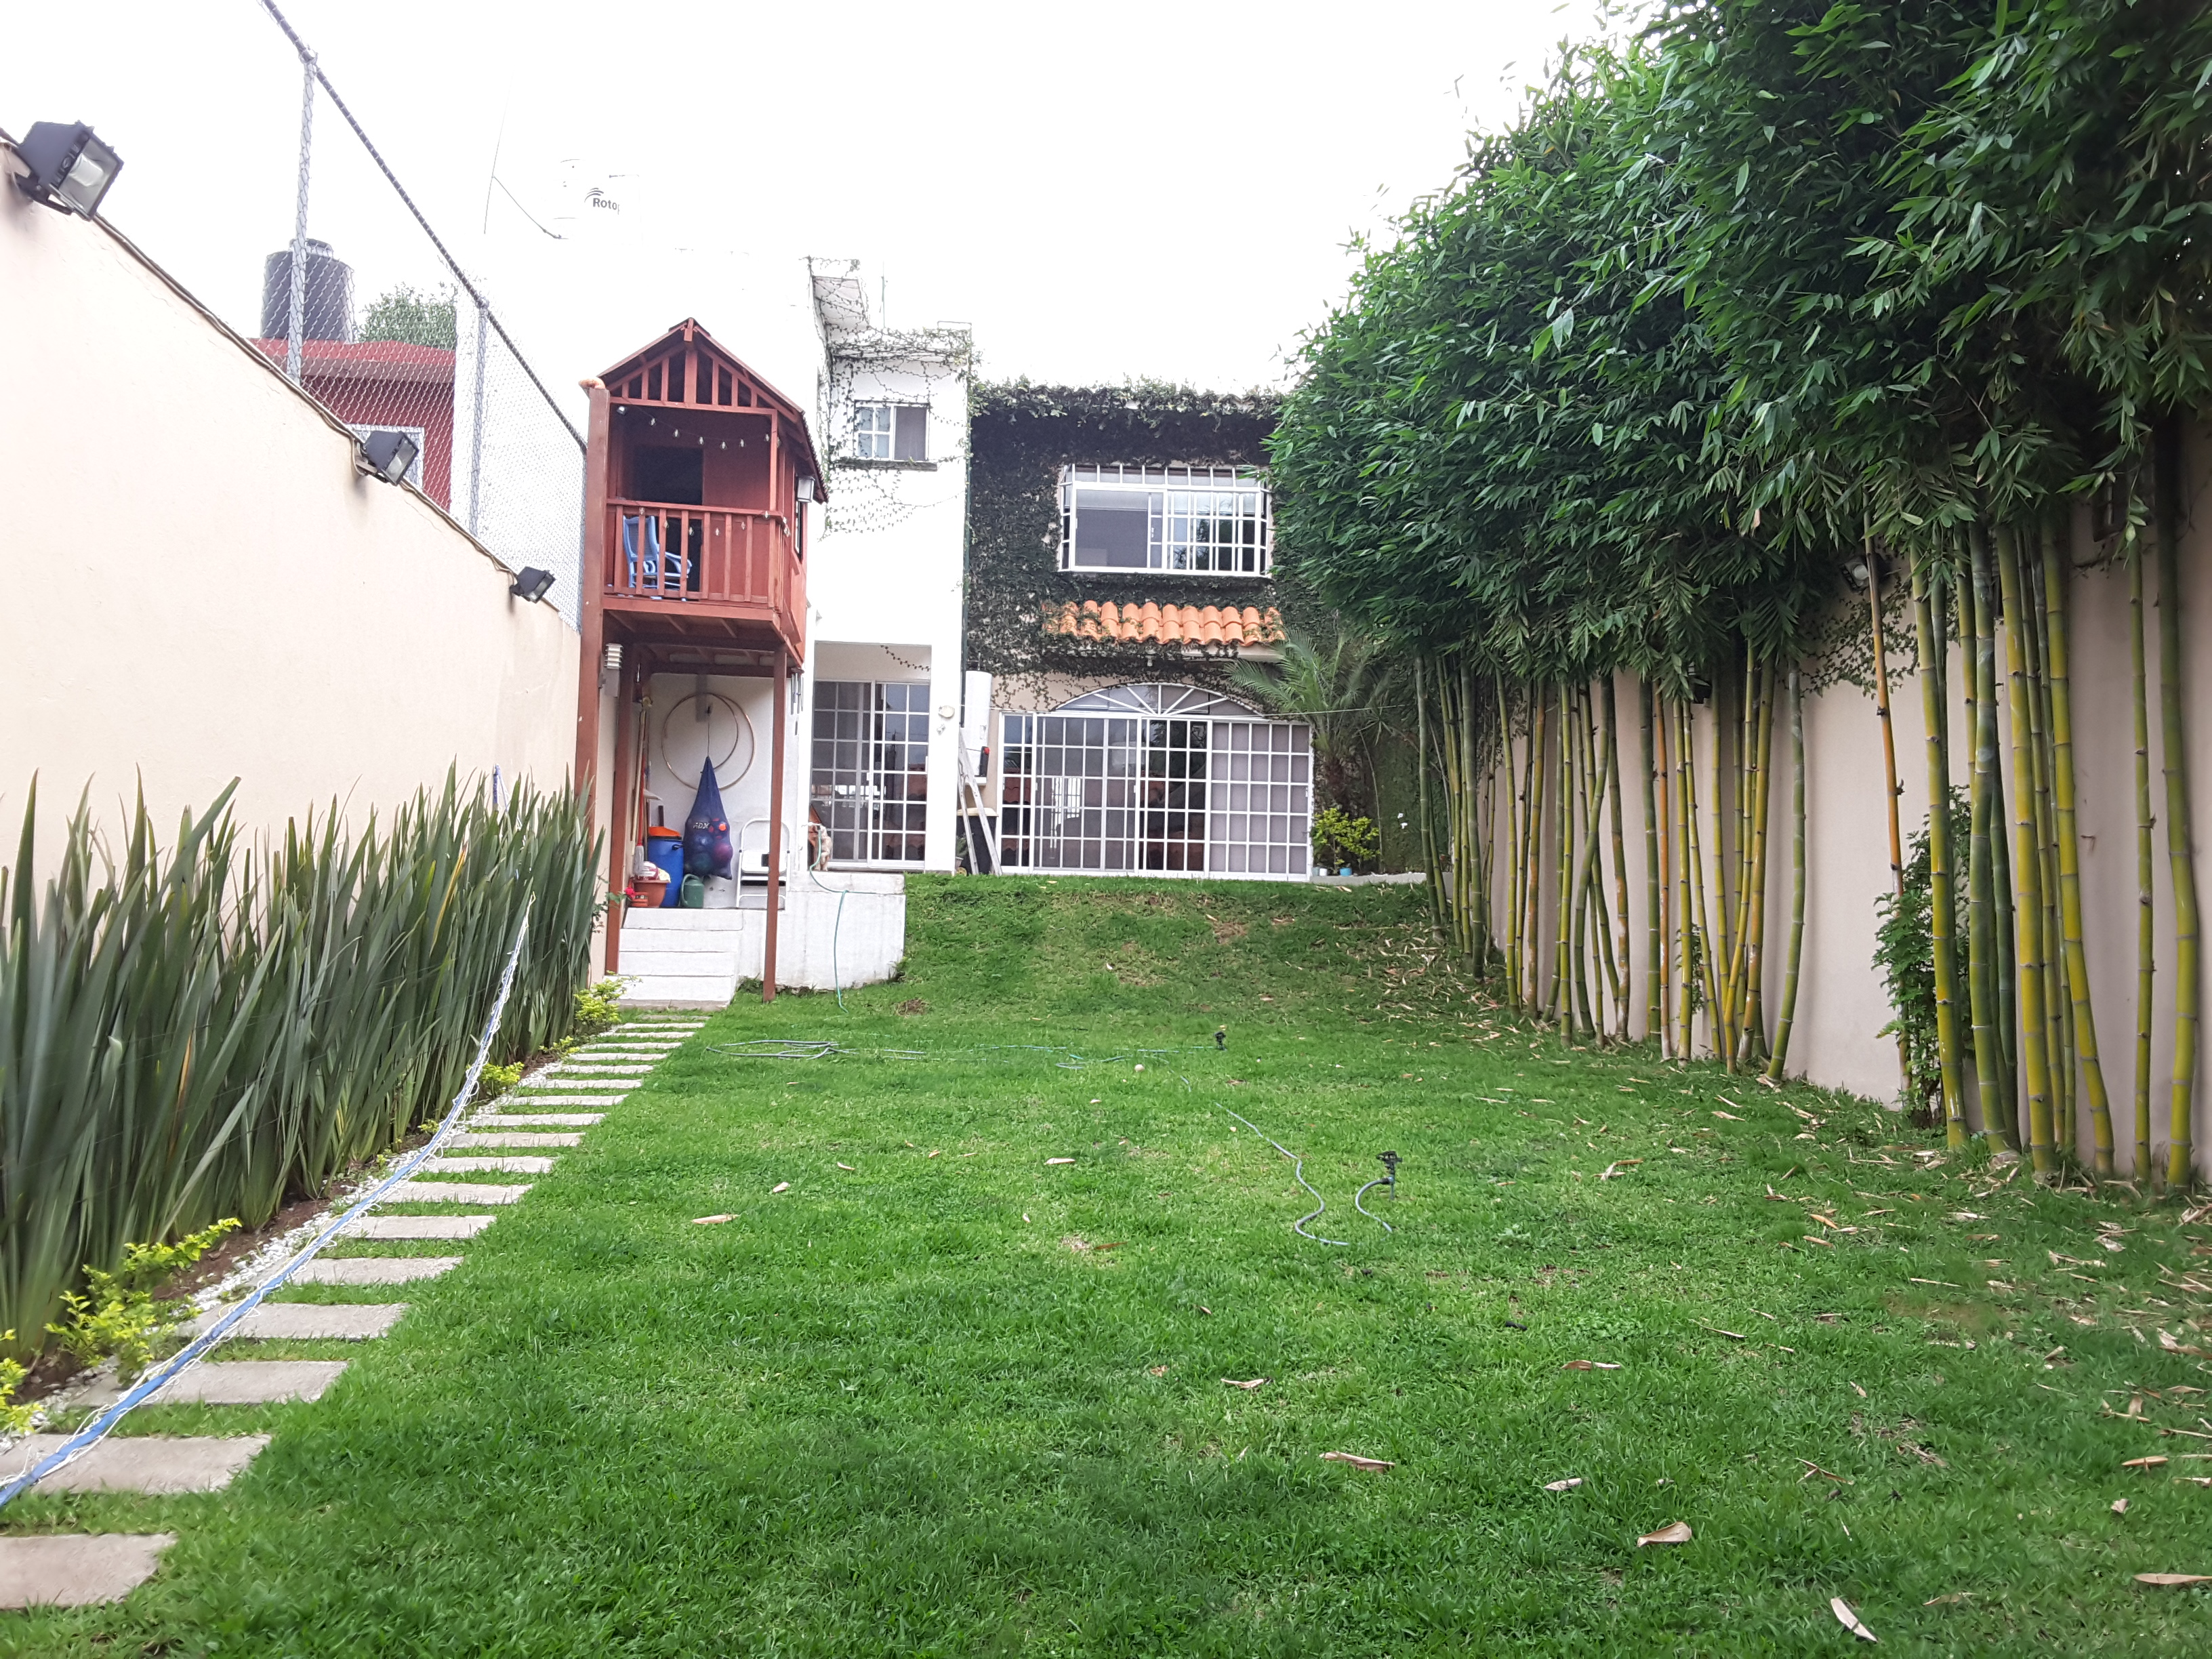  Casa en Venta Coatepec,3 recámaras con terreno de 160m2 o 310 m2 (hermoso jardin)